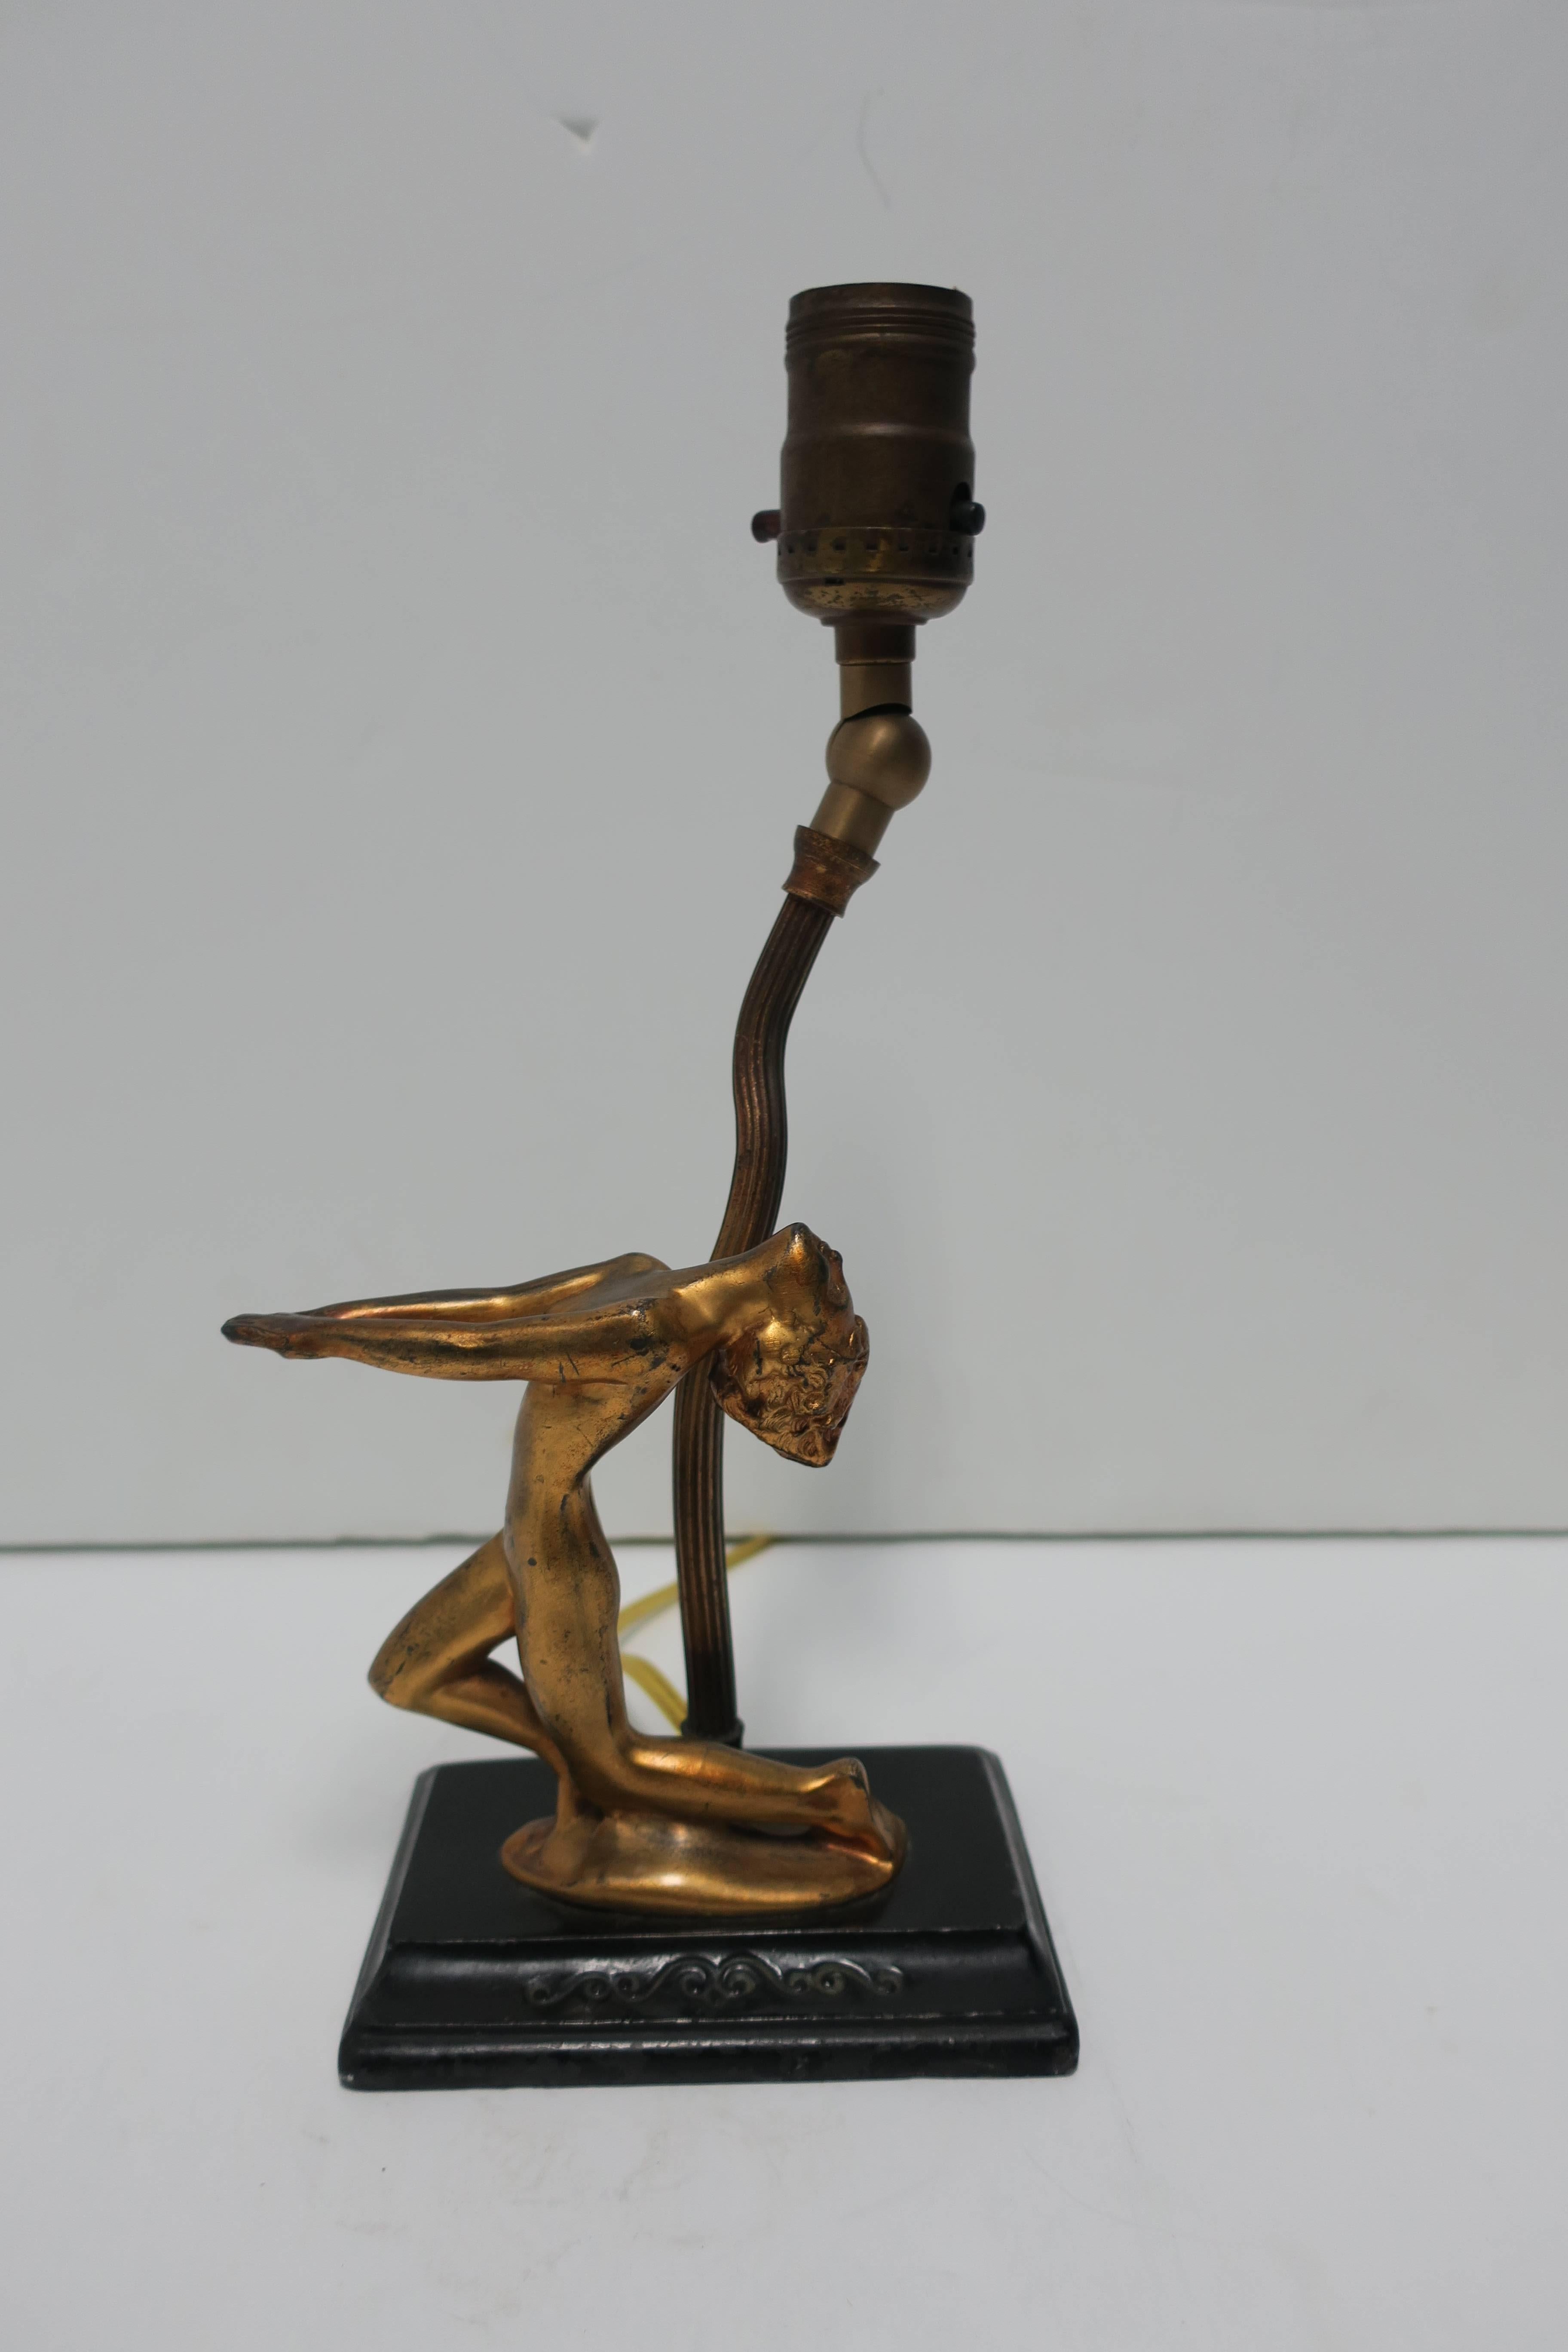 Gilt Art Deco Black and Gold Female Sculpture Desk or Table Lamp After Frankart